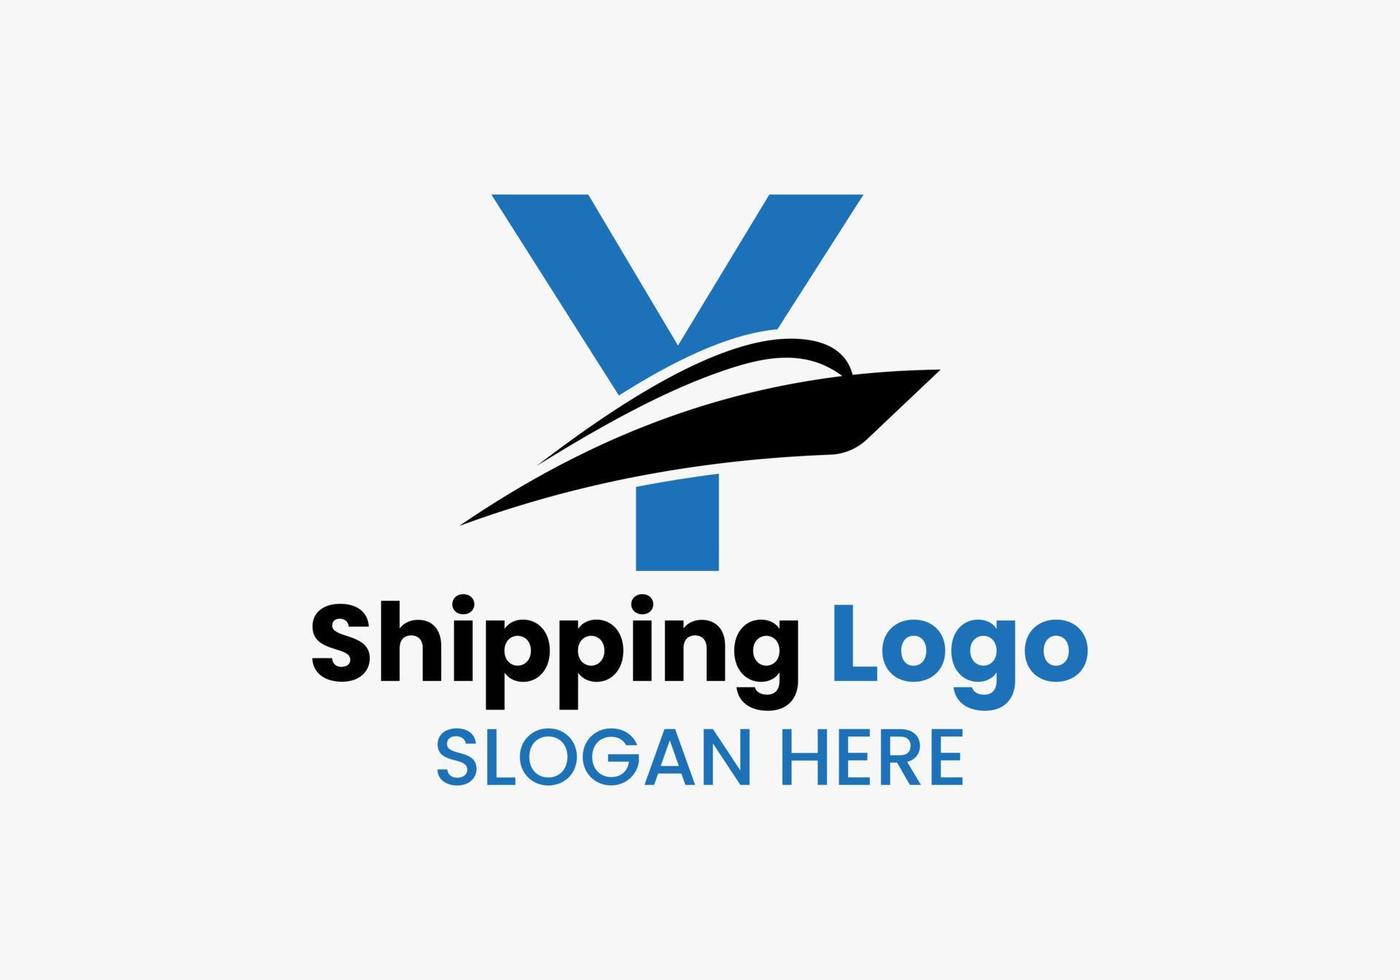 buchstabe y versand logo segelboot symbol. nautisches Schiff Segelboot-Symbol vektor